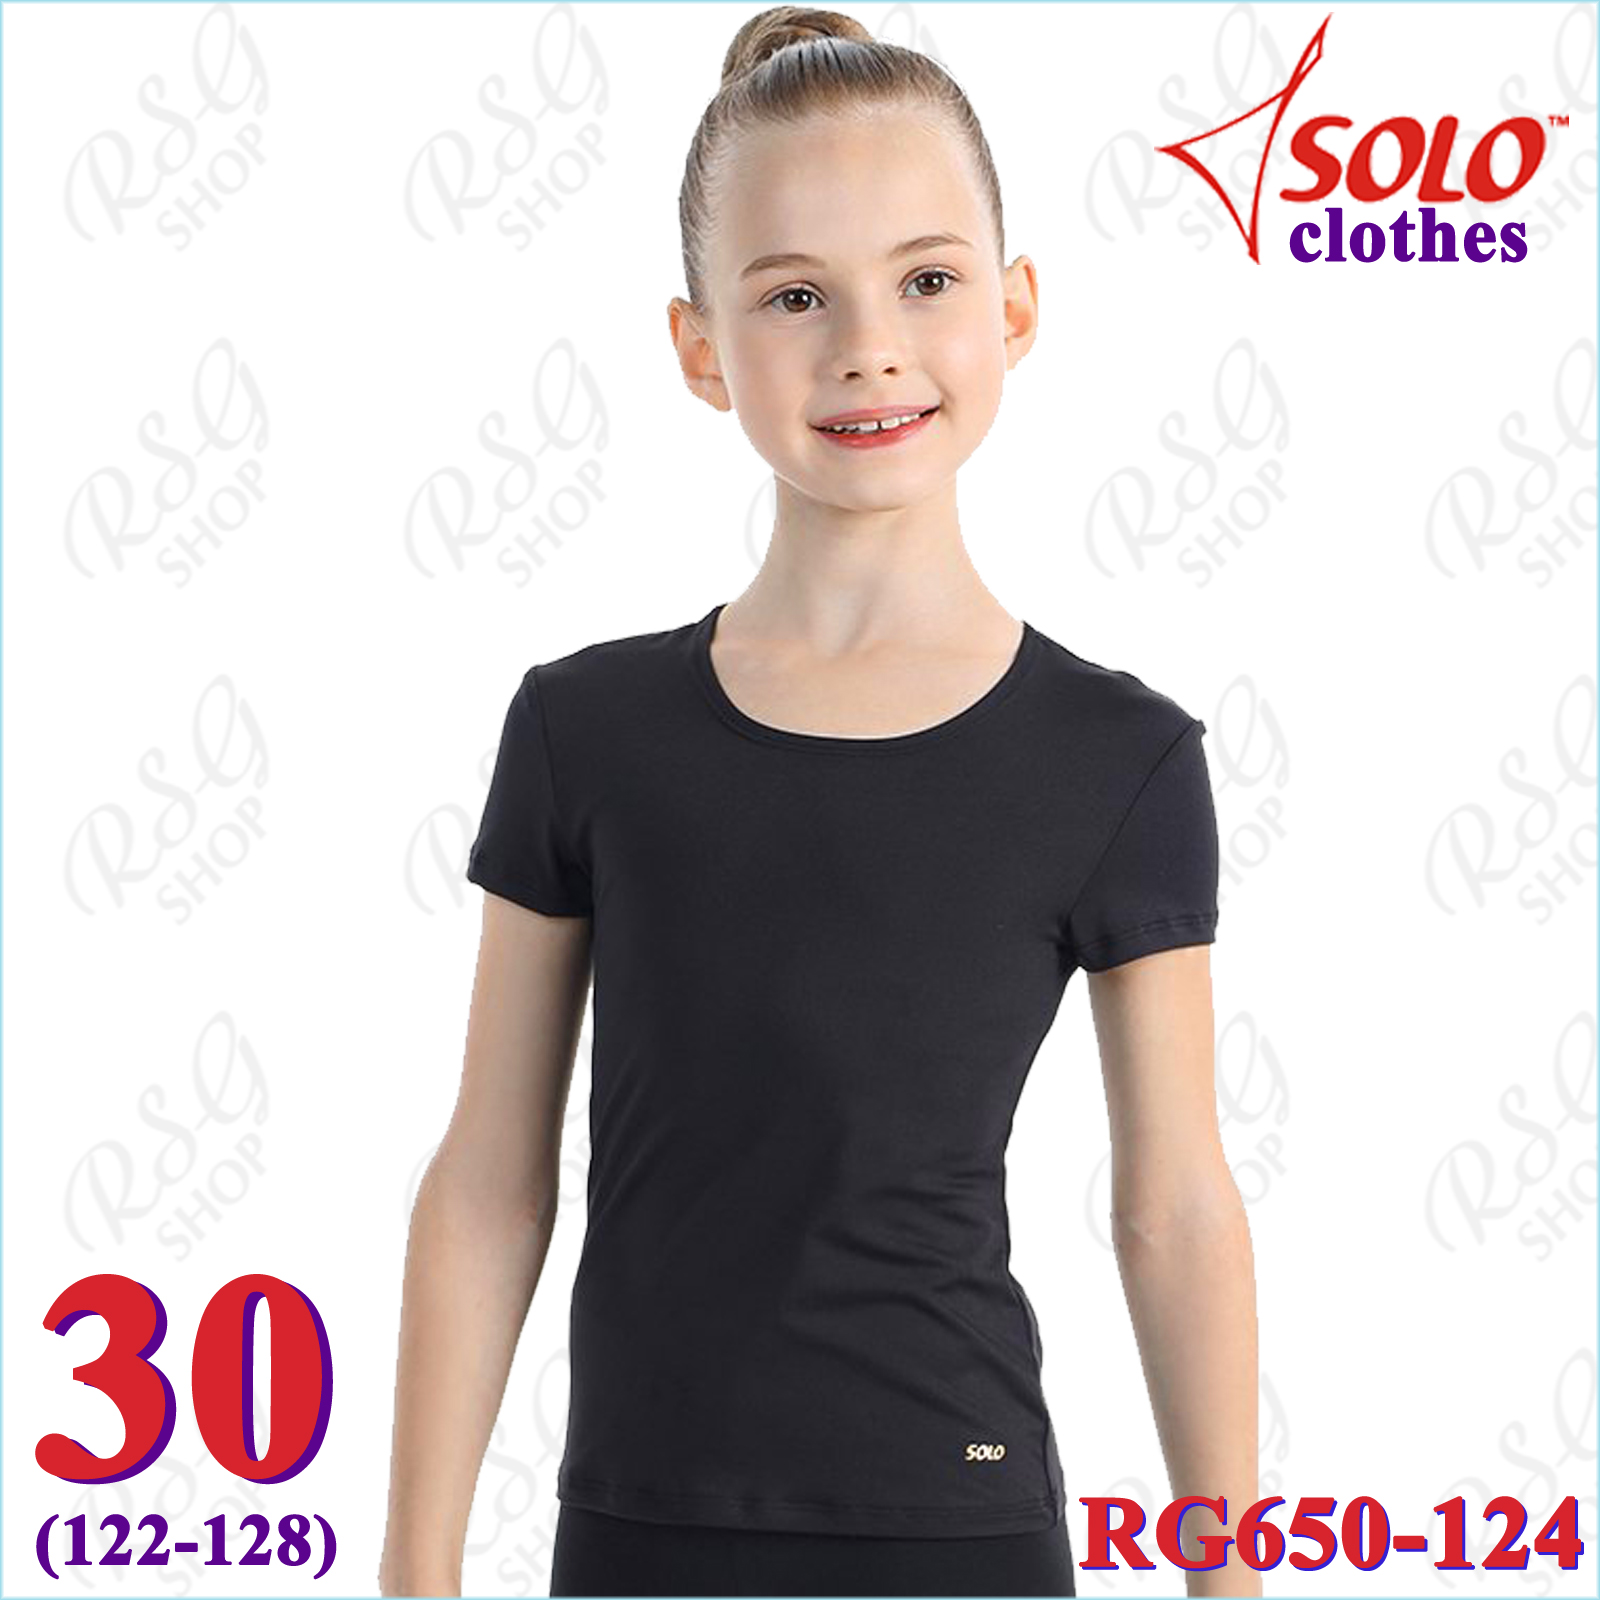 T-Shirt Solo s. 30 (122-128) col. Black Art. RG650-124-30